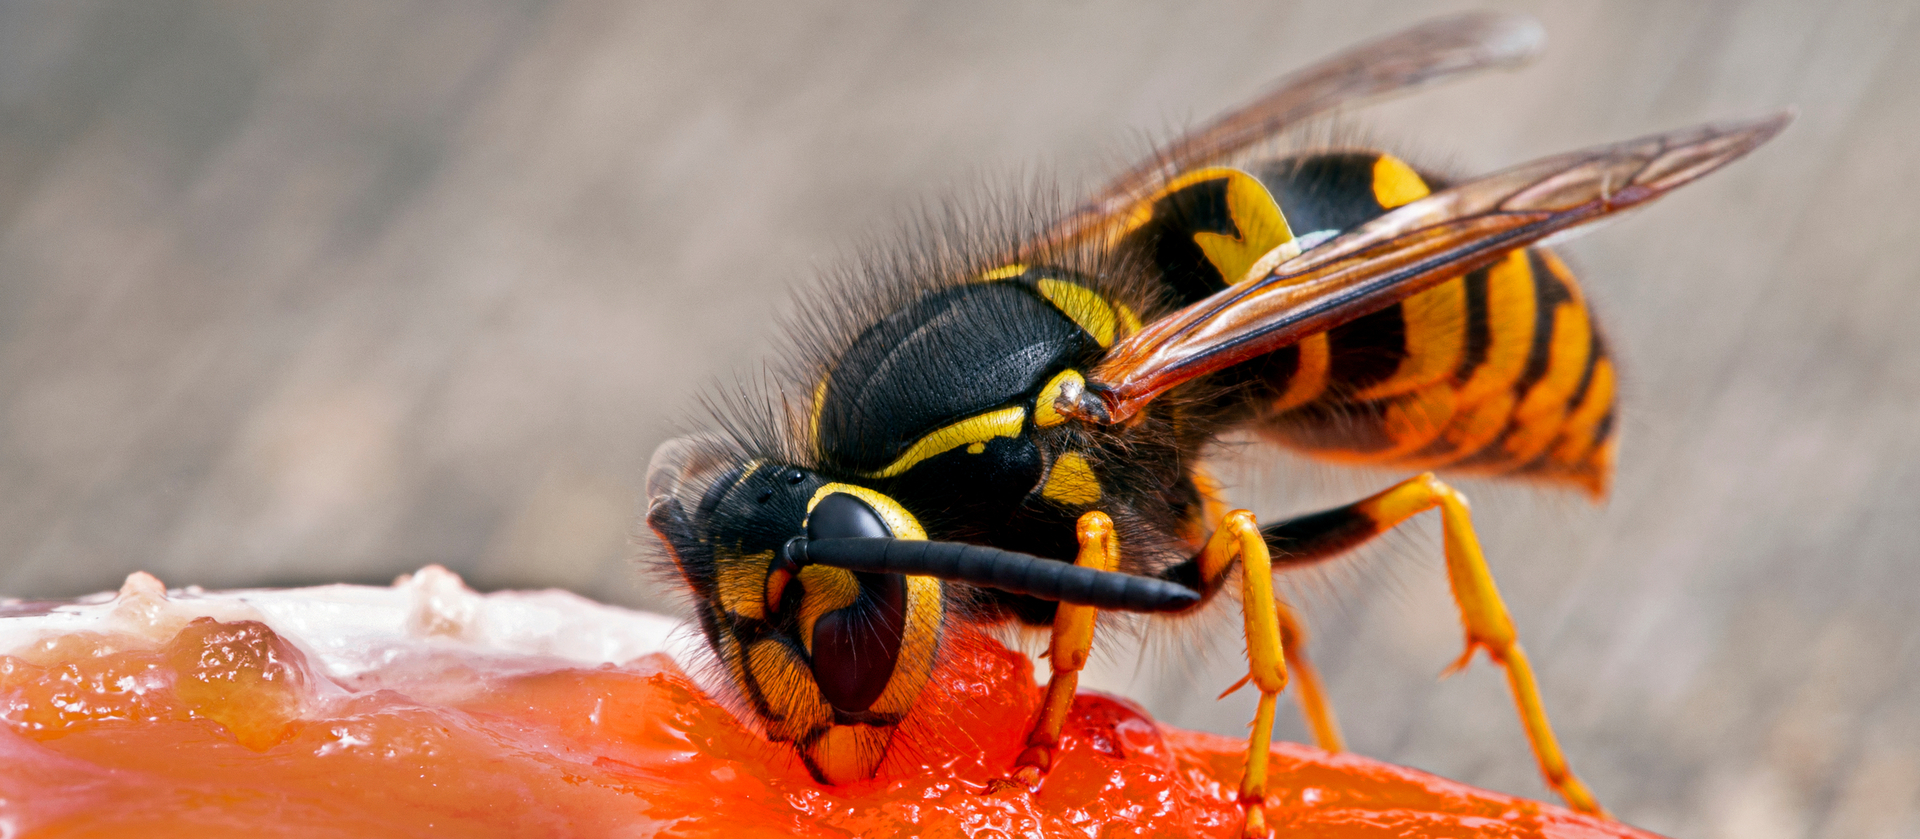 wasp feeding on jam